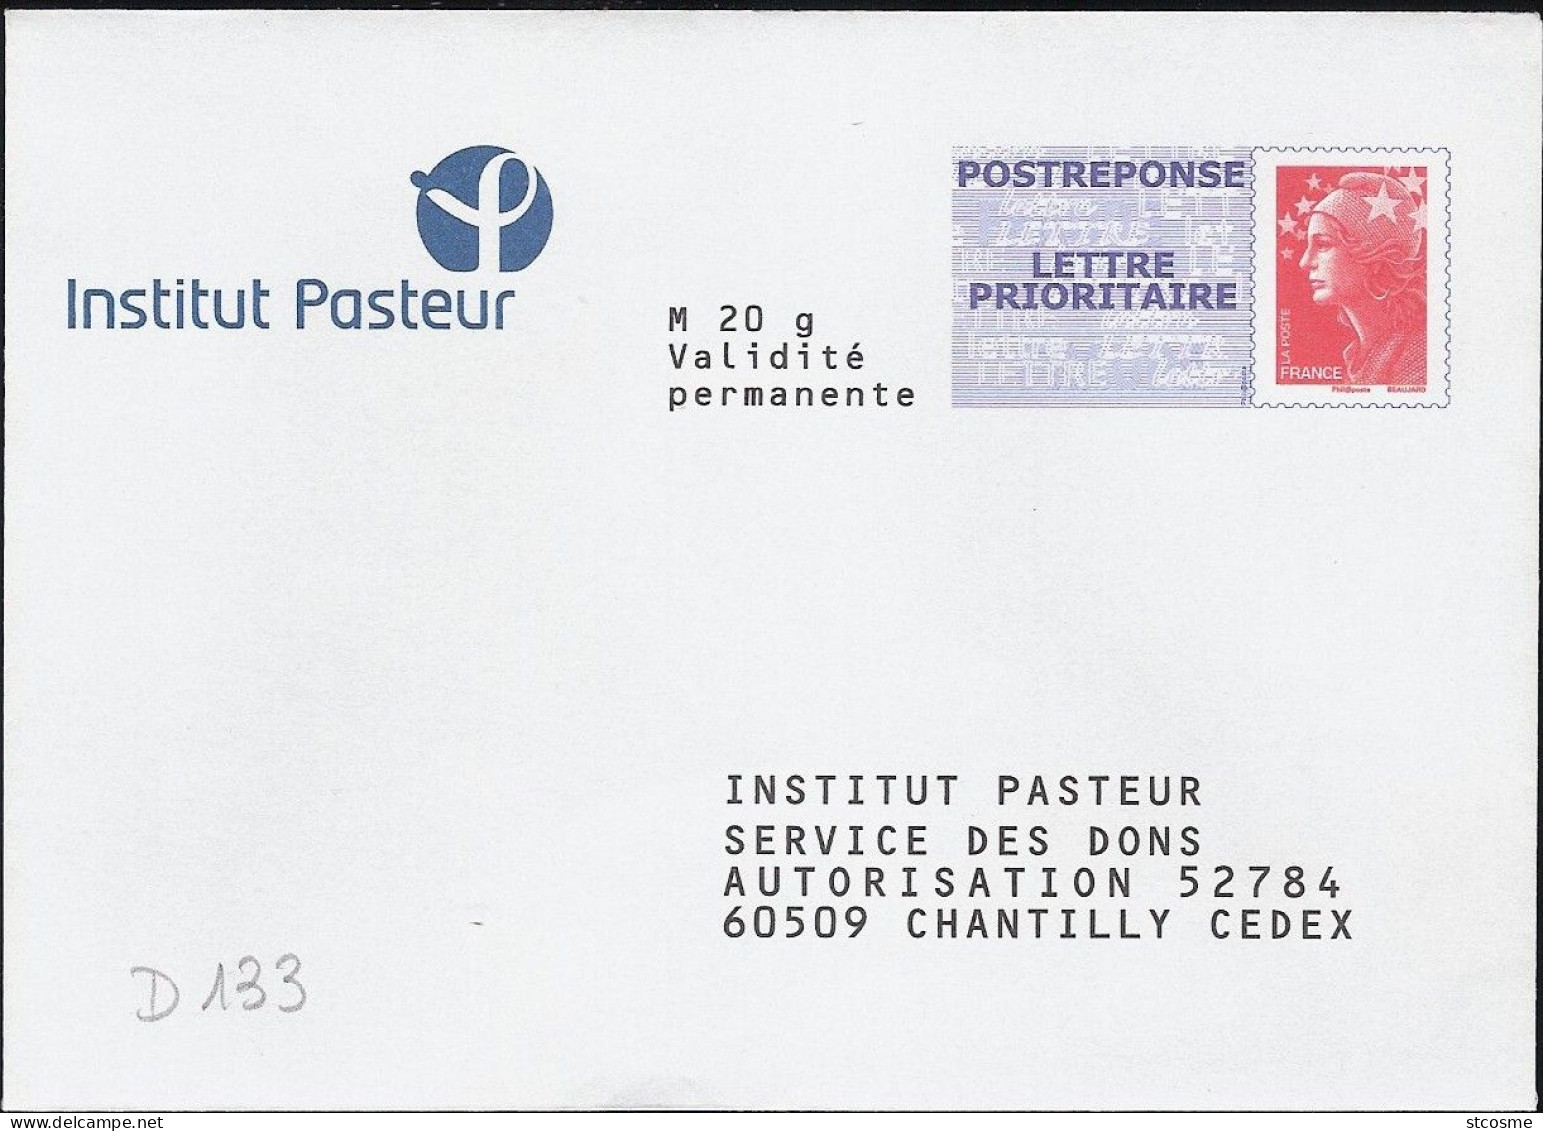 D0133-B - Entier / Stationery / PSE - PAP Réponse Beaujard - Institut Pasteur - Agrément 10P497 - PAP: Antwort/Beaujard